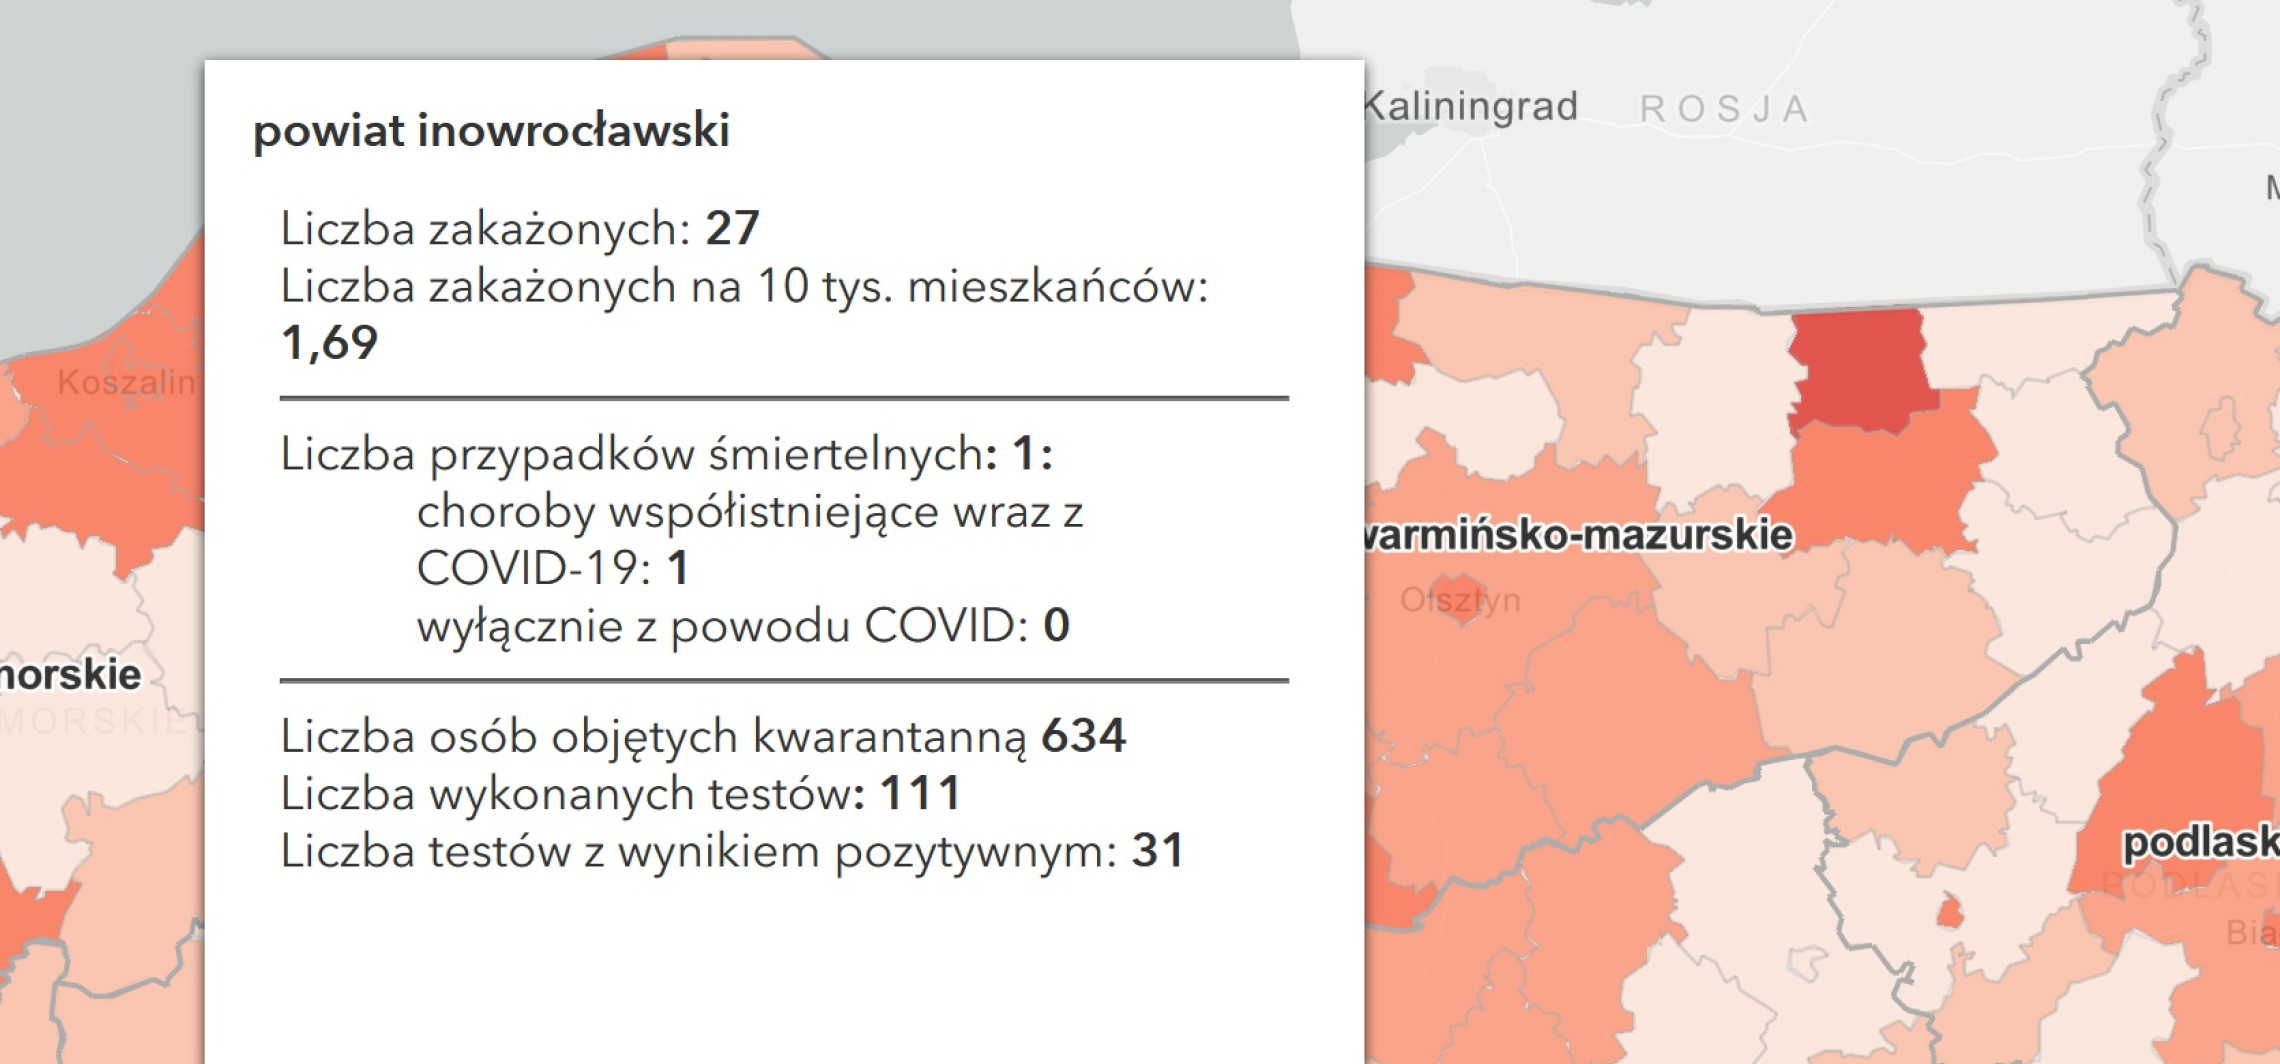 Inowrocław - Koronawirus. Spadek liczby zakażeń i zgonów